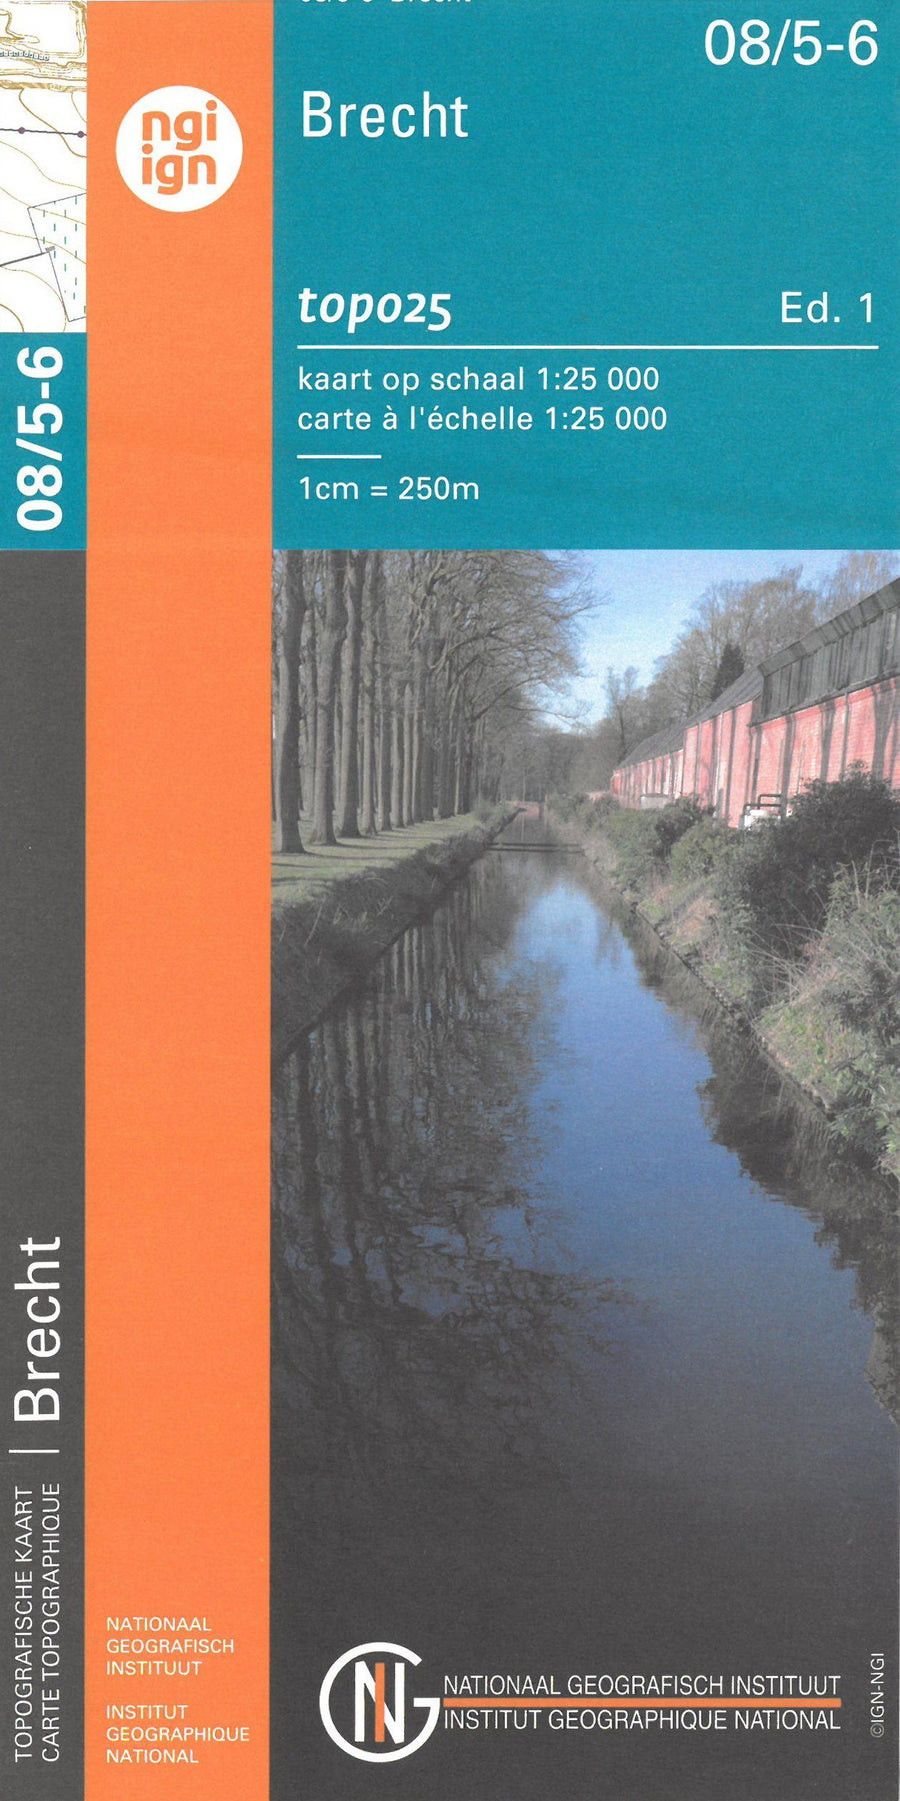 Carte topographique n° 08/5-6 - Brecht (Belgique) | NGI topo 25 carte pliée IGN Belgique 